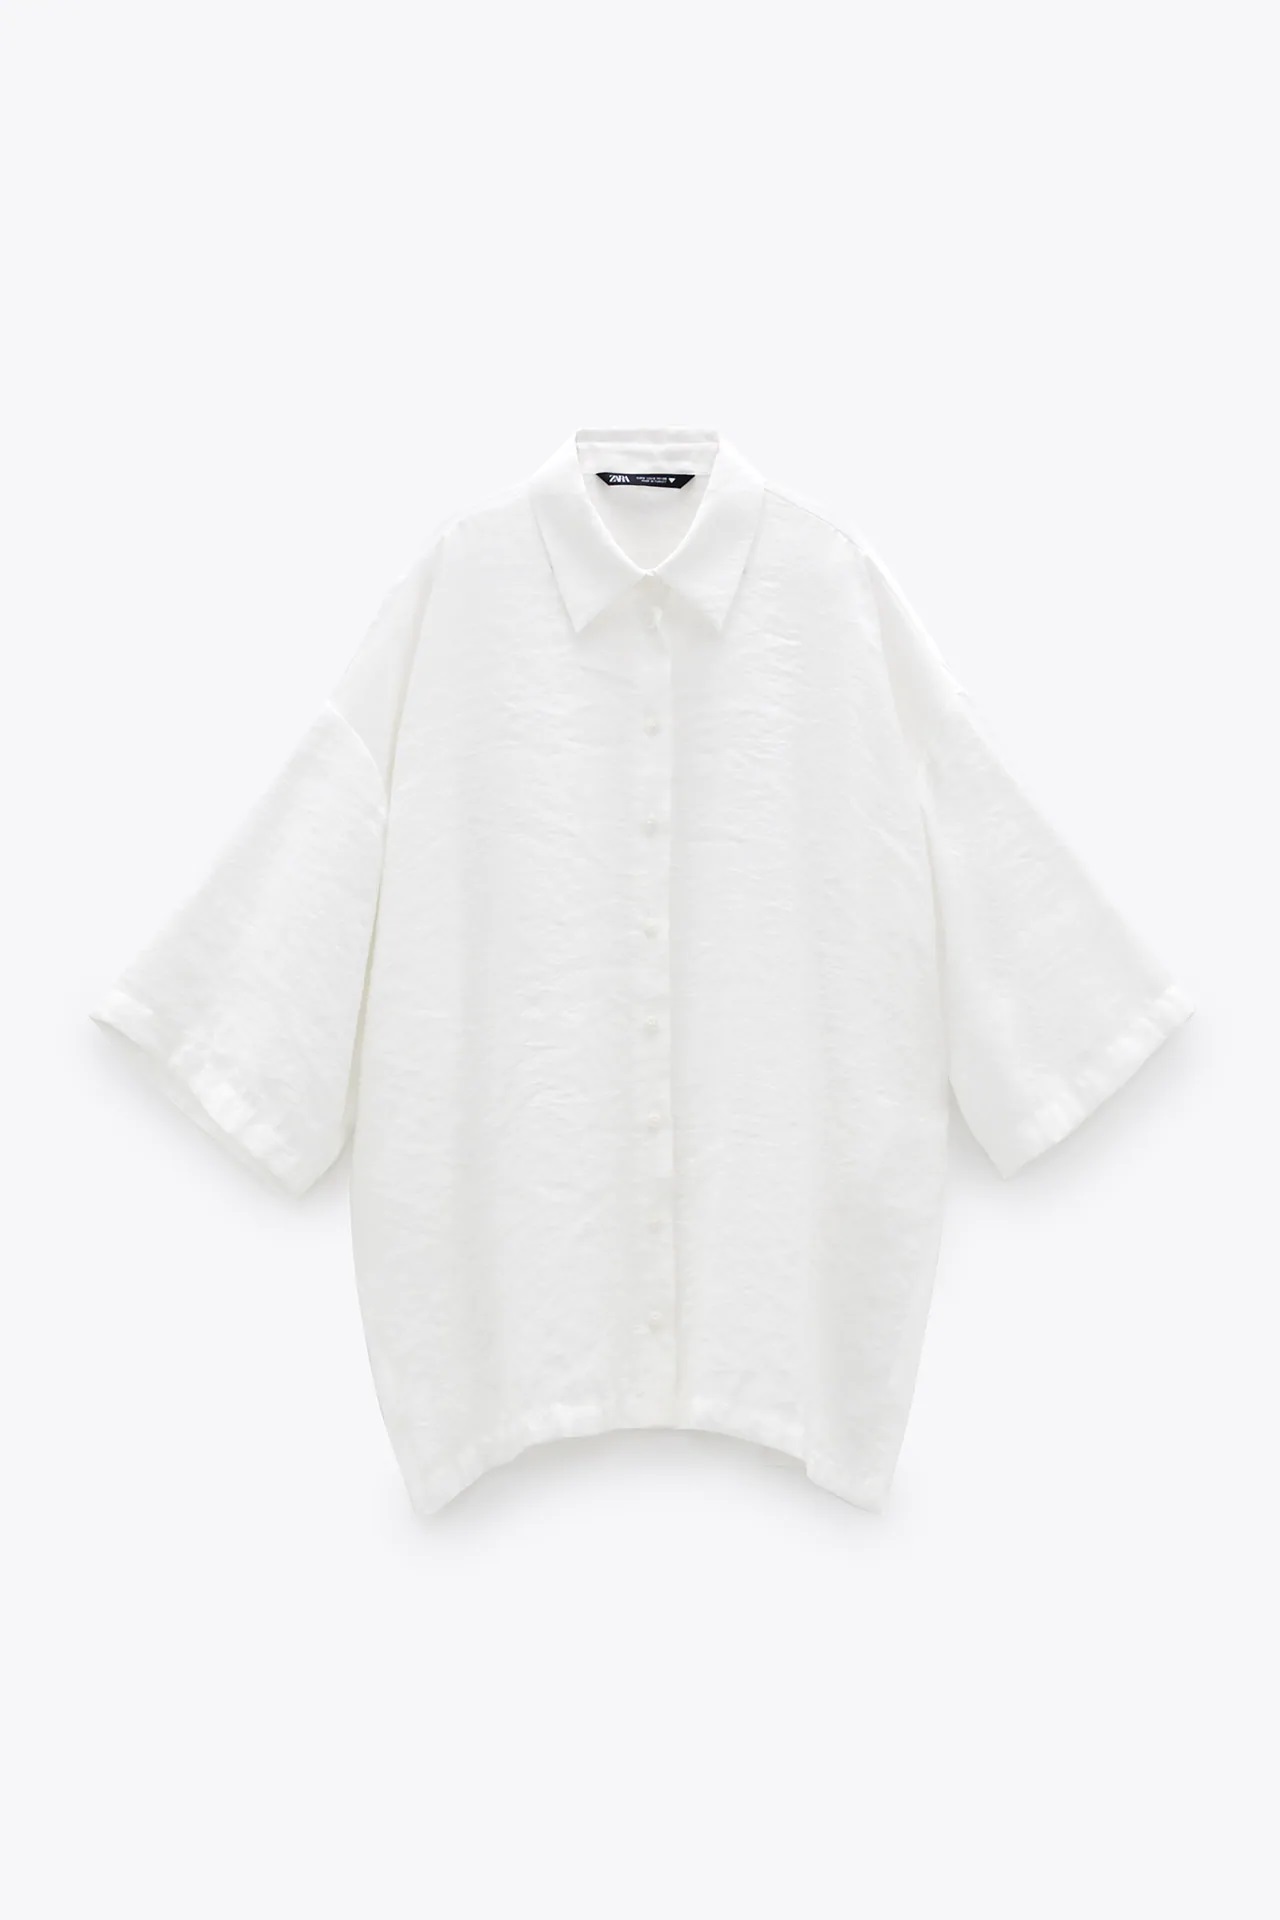 De Amelia Bono a María Pombo, estas son las camisas blancas de Zara que triunfan